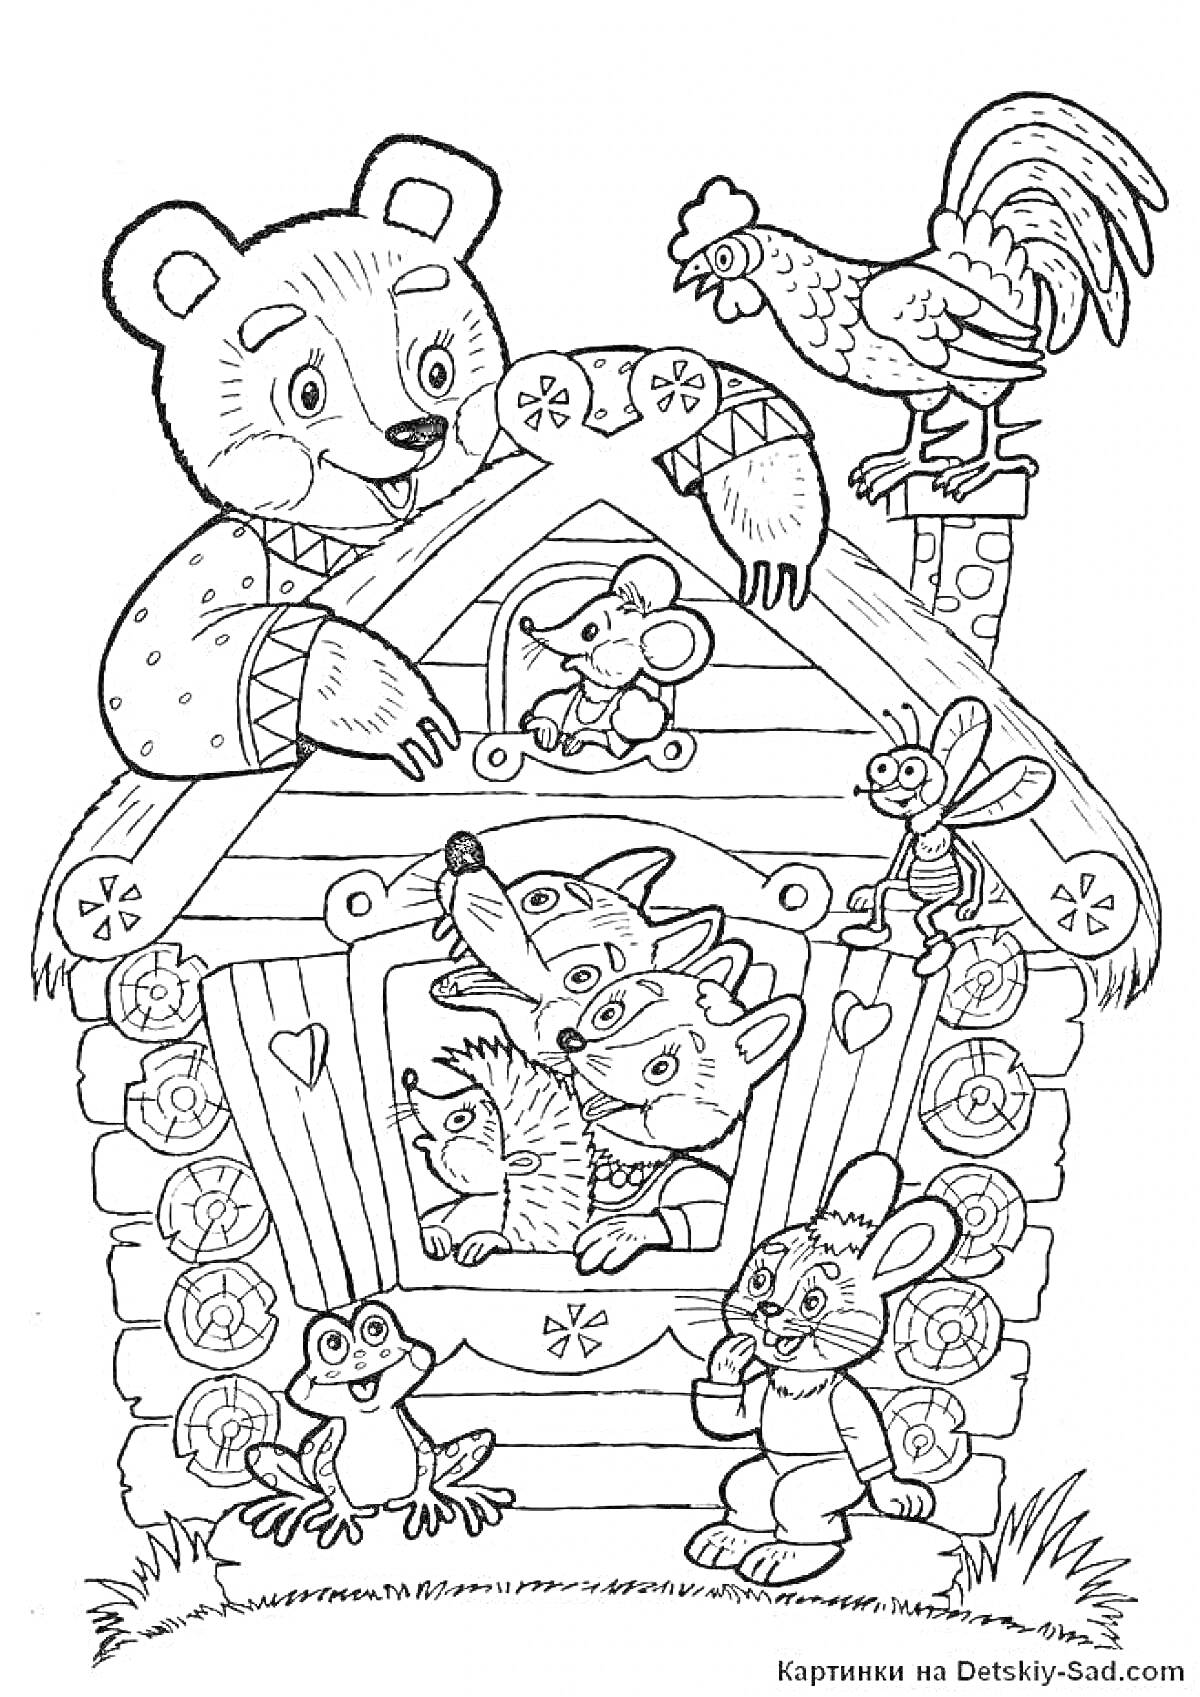 Раскраска Теремок - медведь, петух, лягушка, мышка, собака, лиса, змея, заяц у деревянного домика